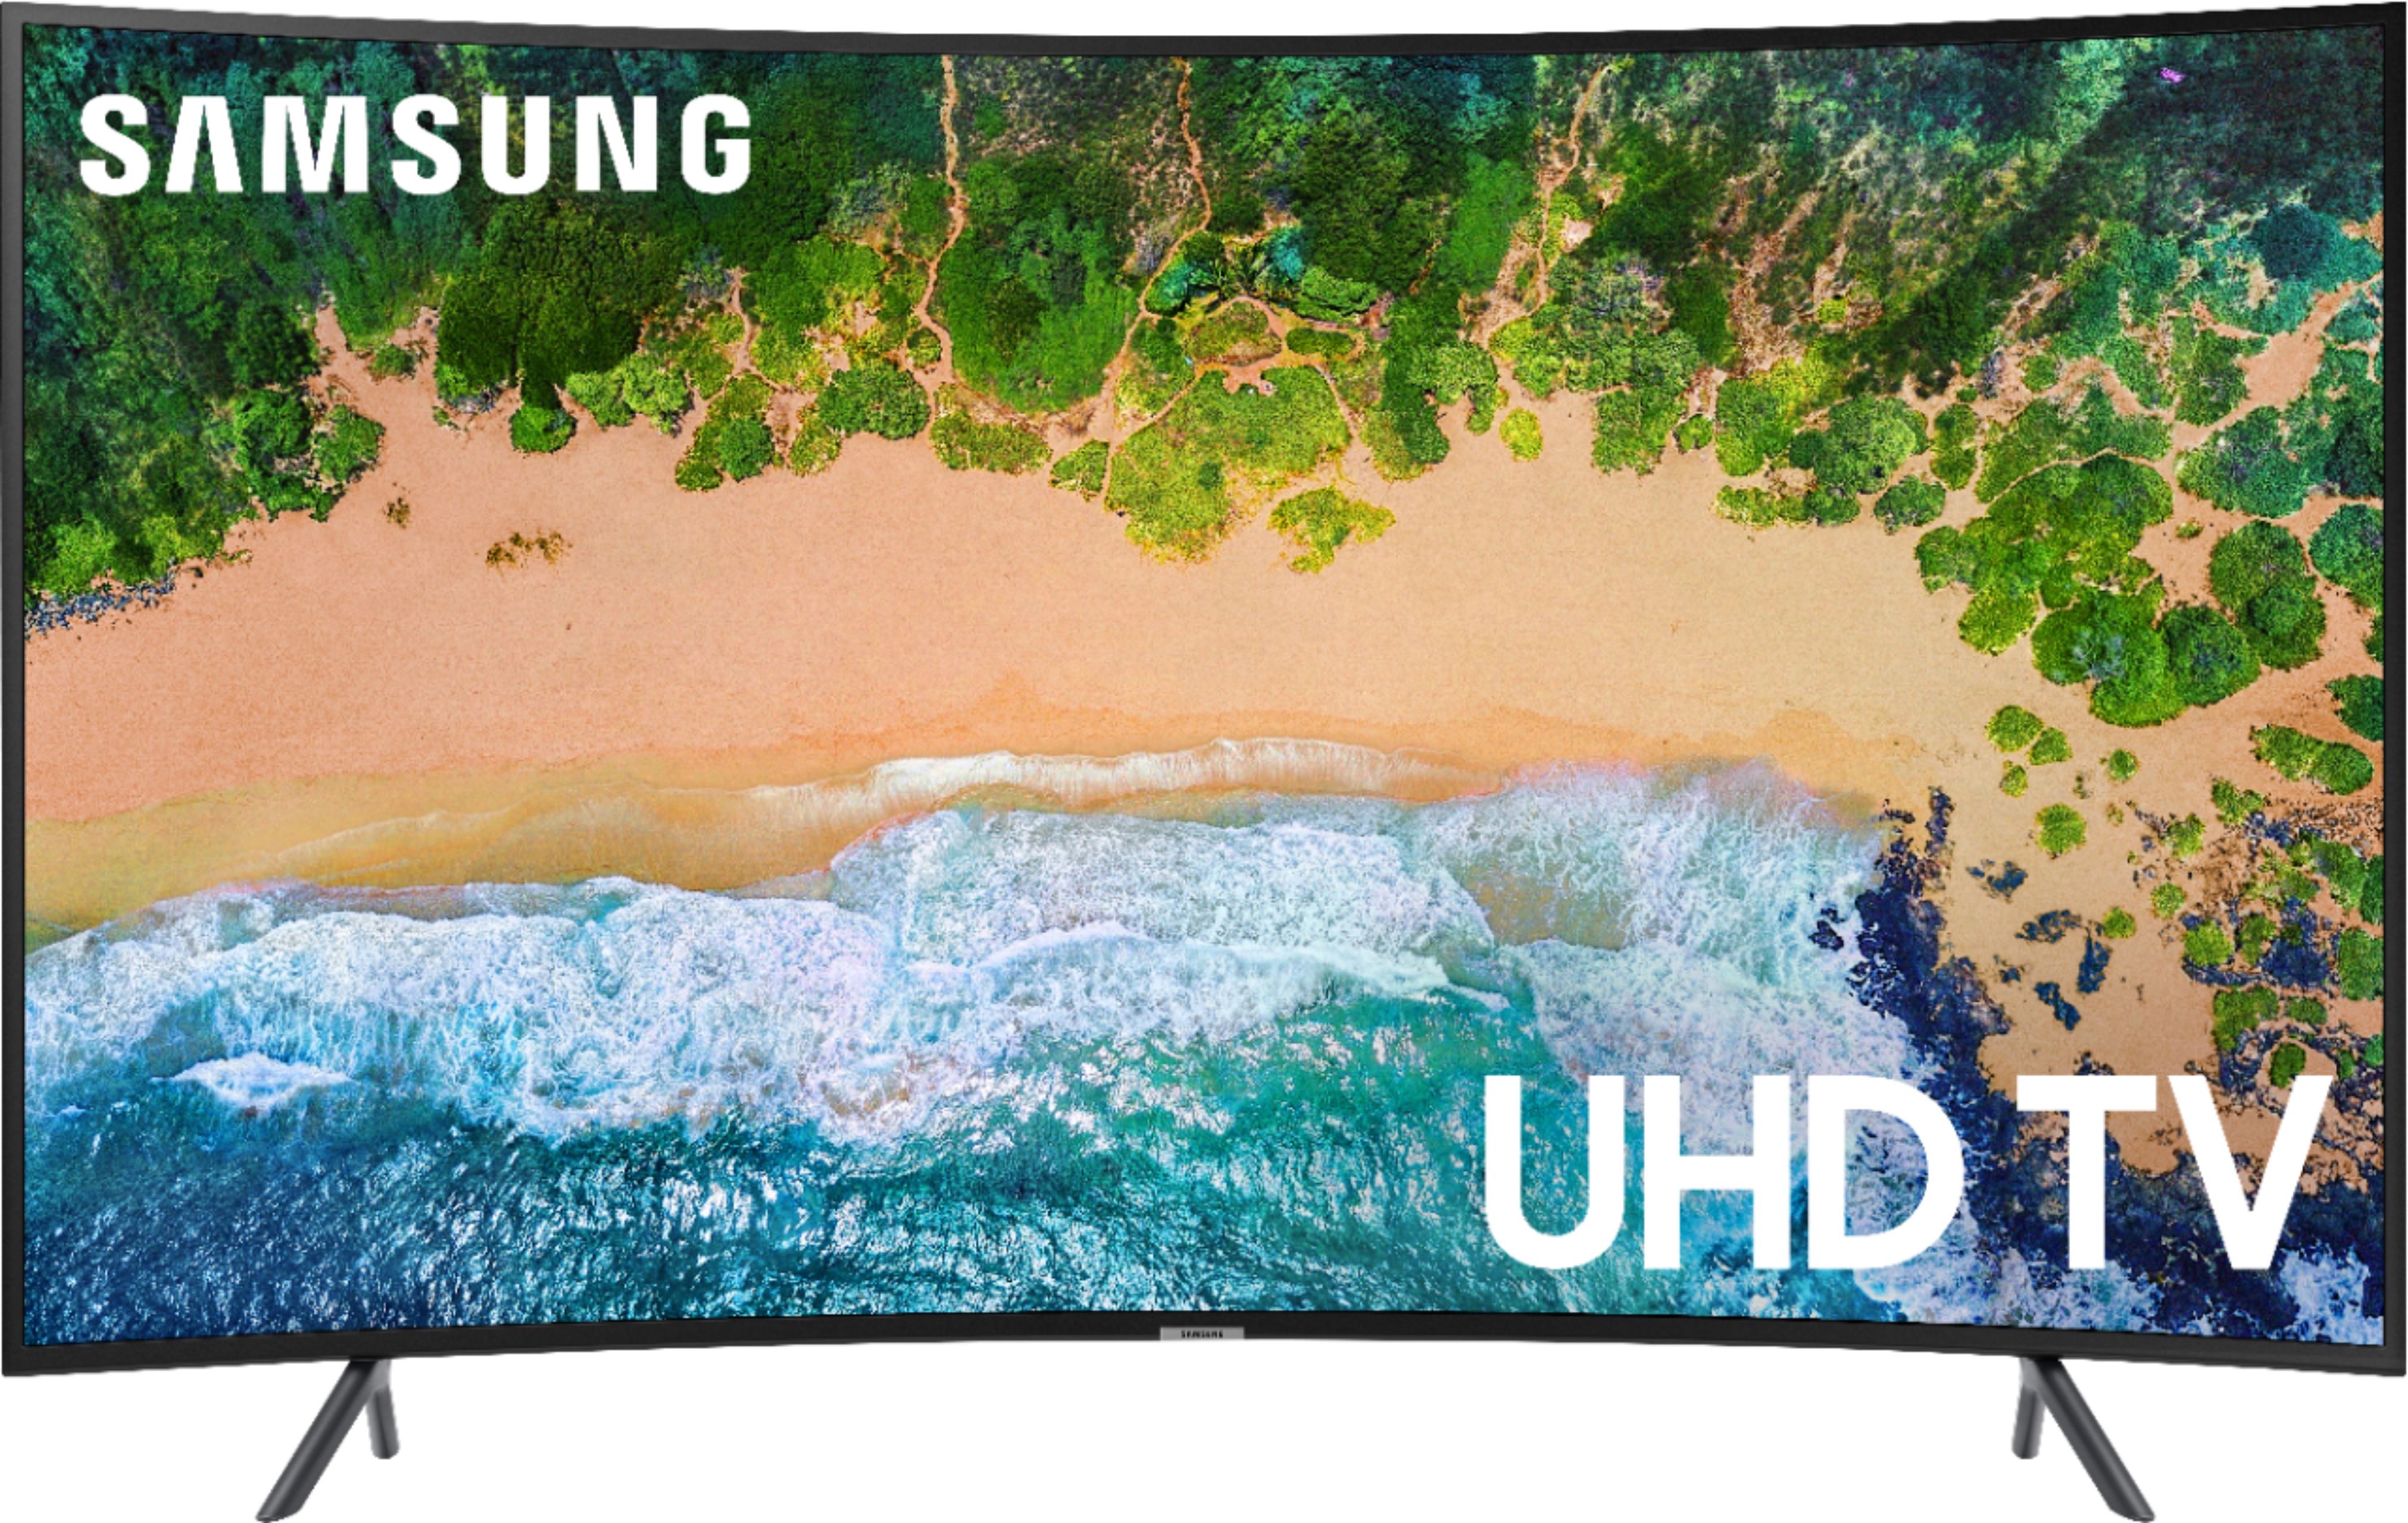 12+ Samsung 65 4k uhd smart tv screen replacement info